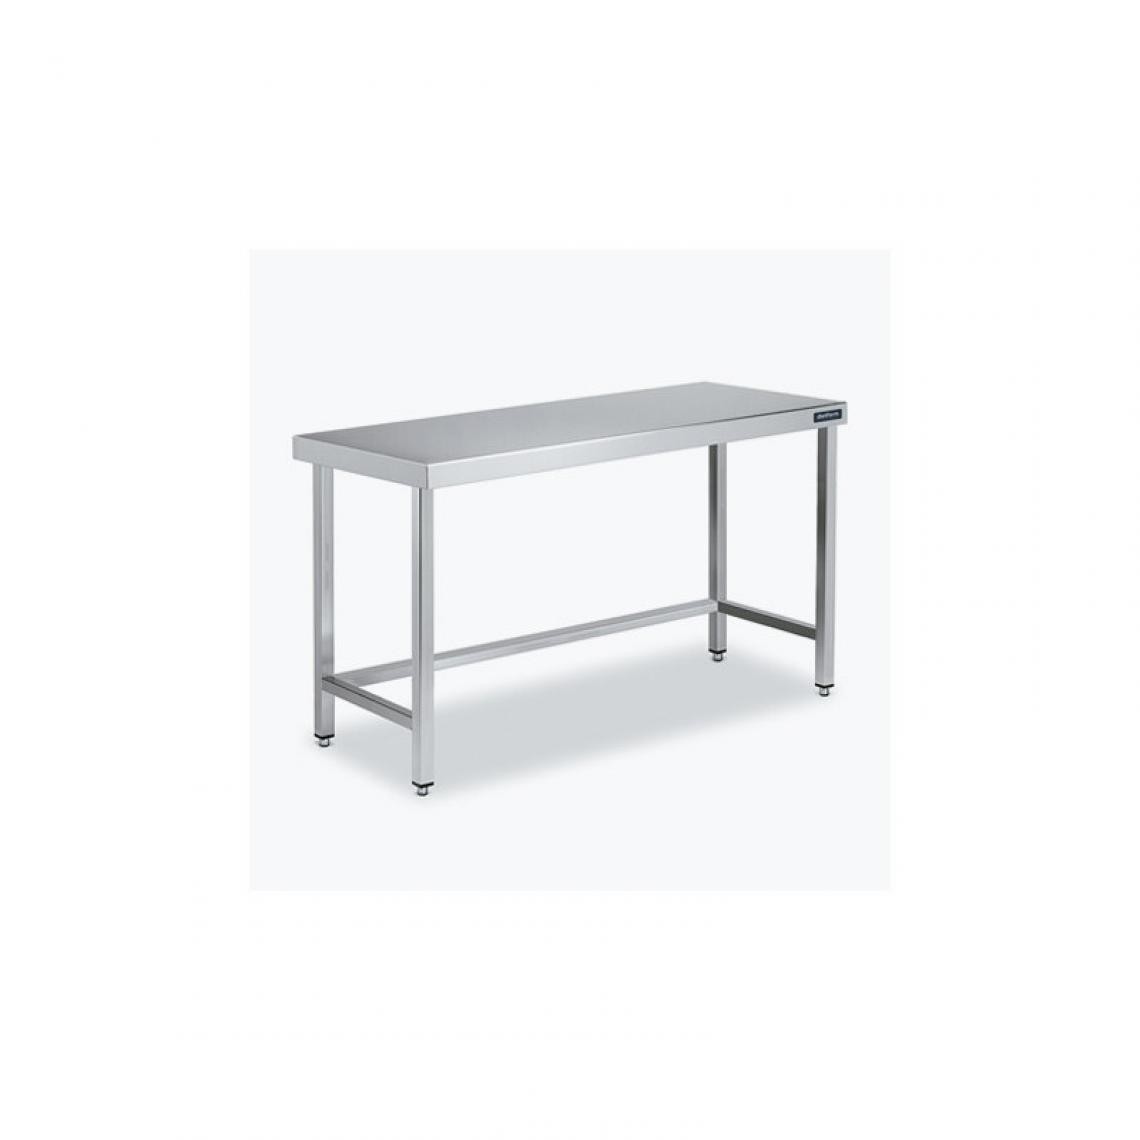 DISTFORM - Table Central 600x550 sans Étagère - Distform - Inox 18/101800x550x850mm - Tables à manger